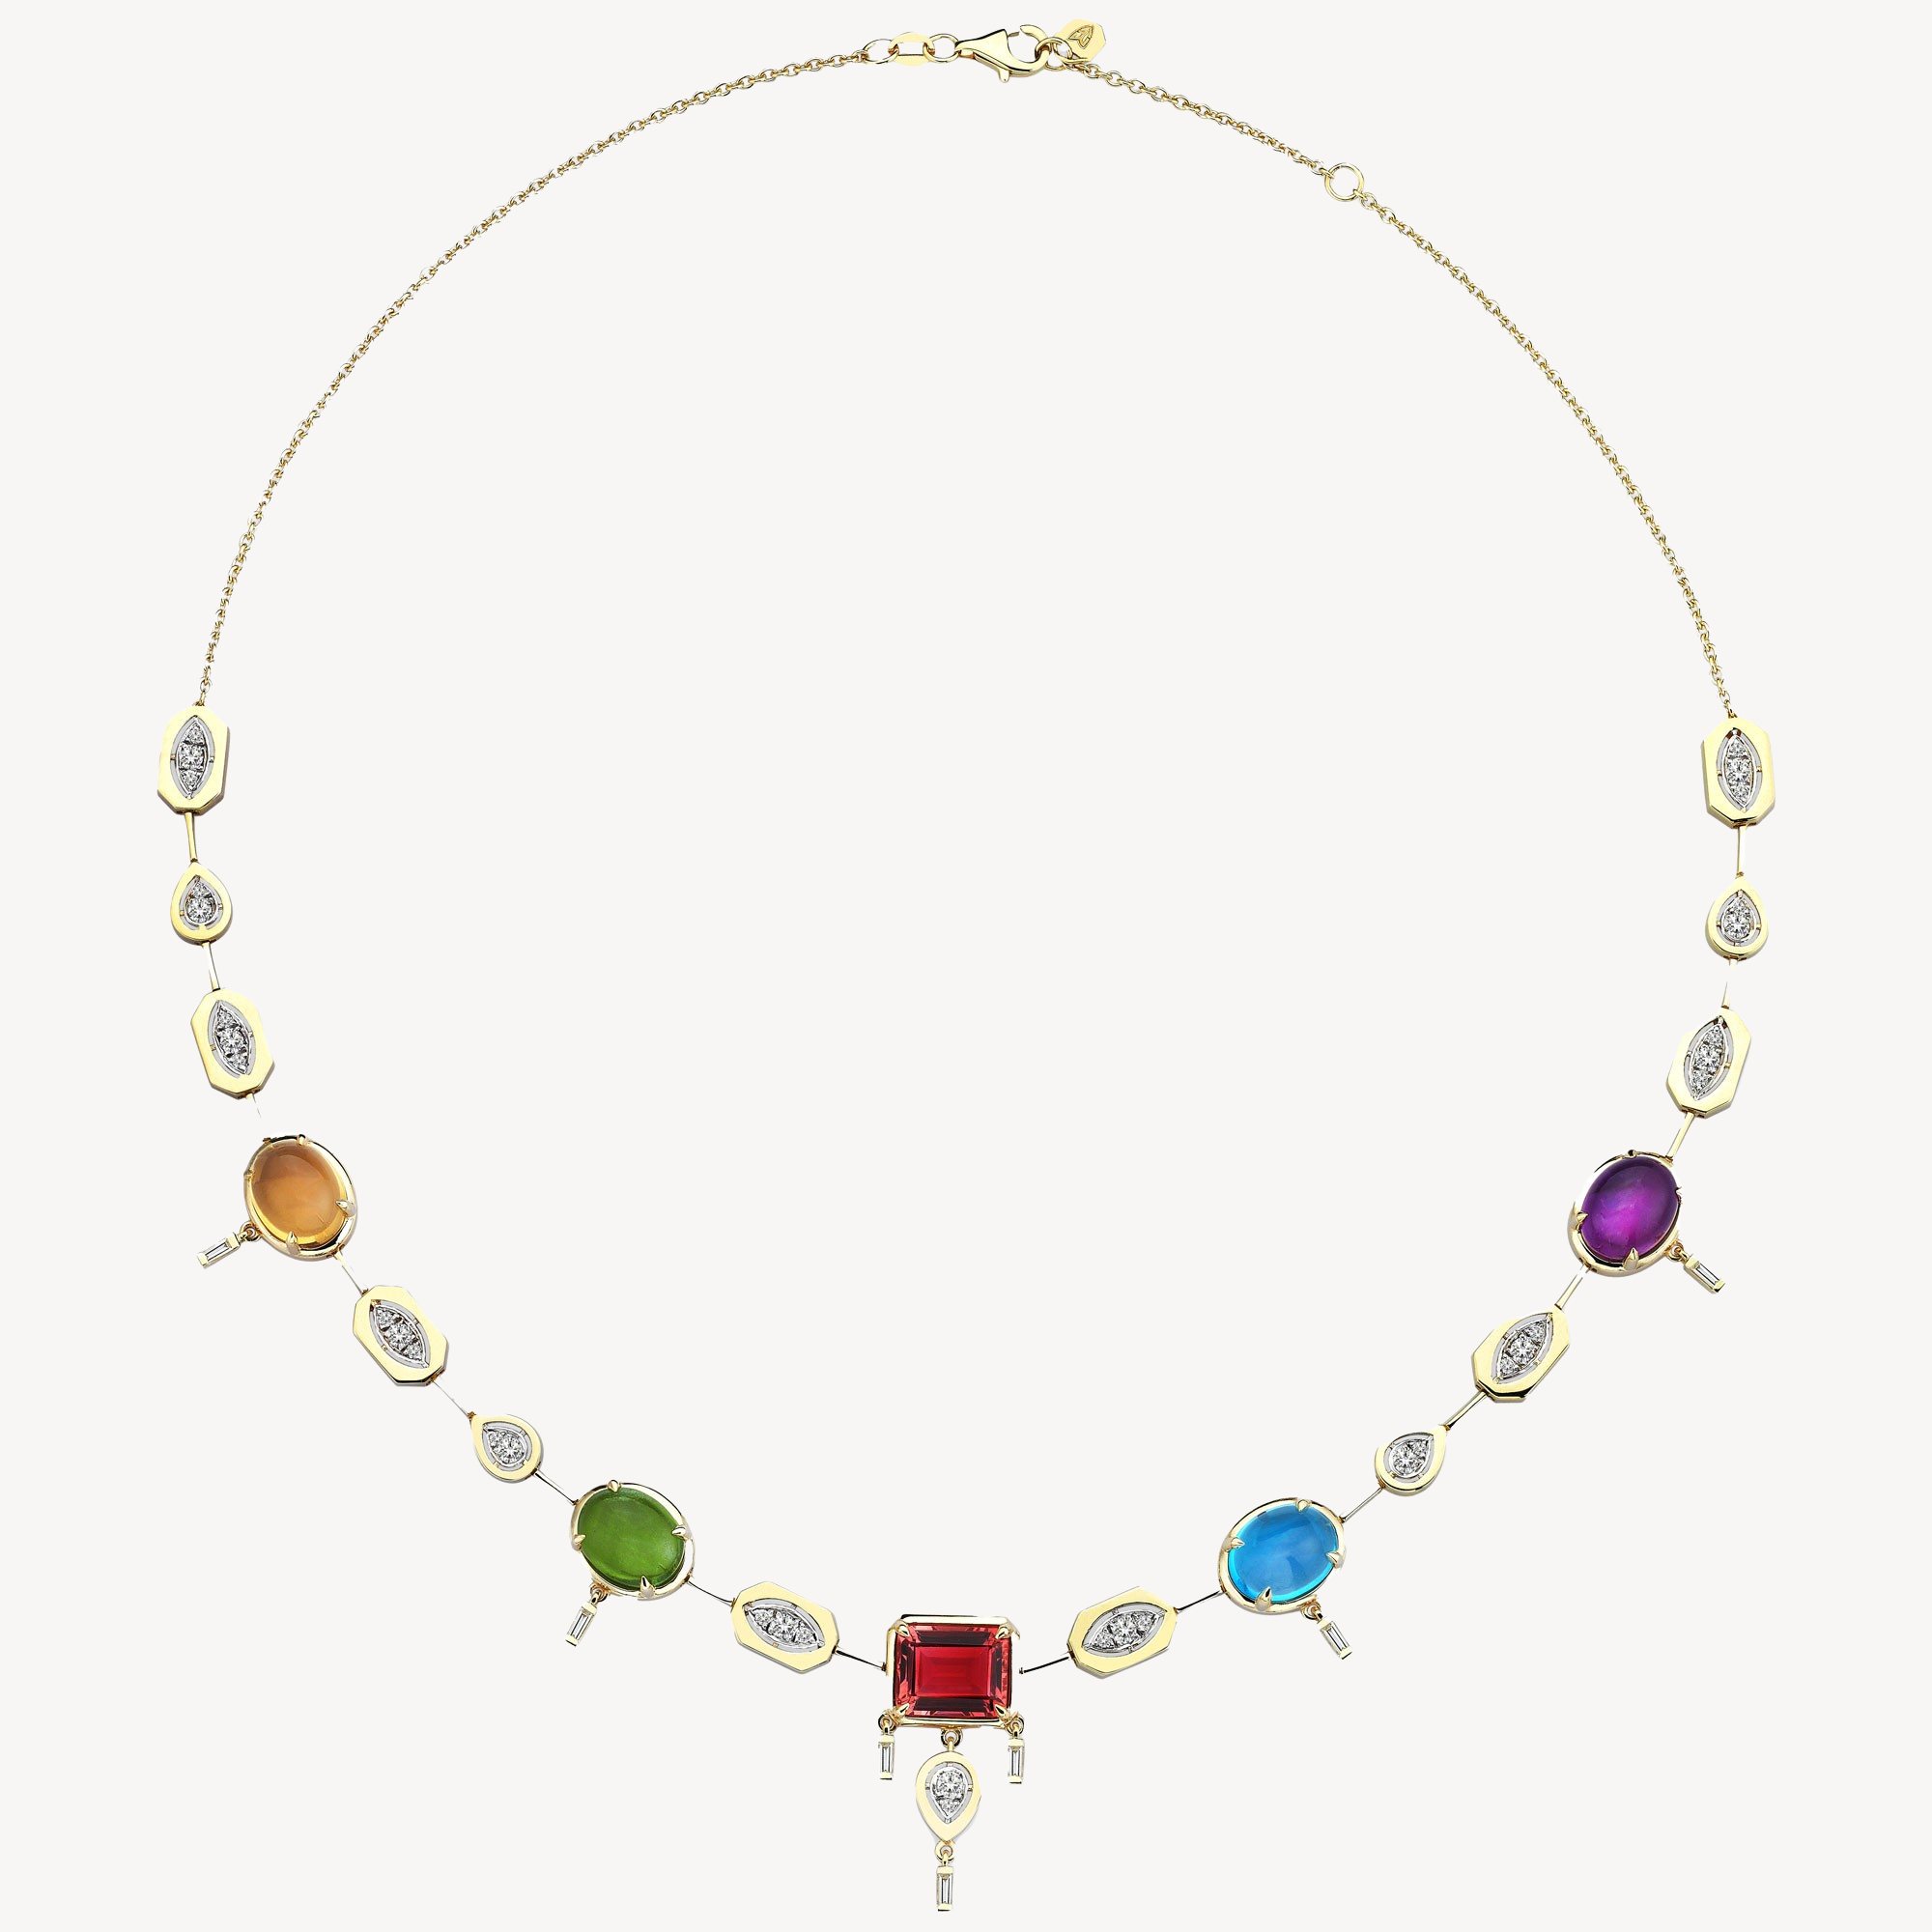 Focus-Halskette mit mehrfarbigen Steinen